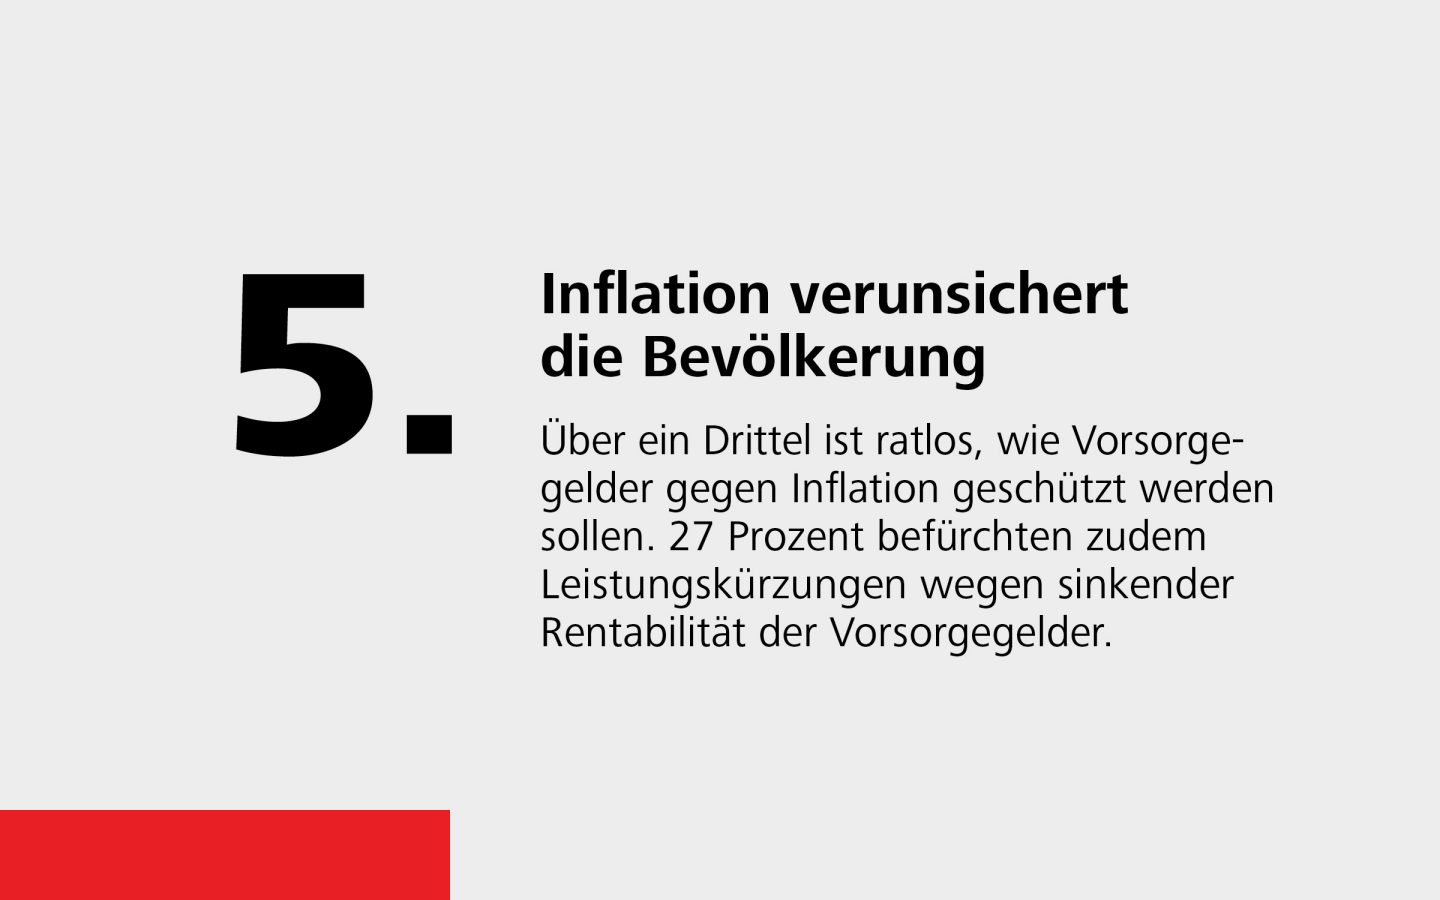 Fakt 5: Inflation verunsichert die Bevölkerung